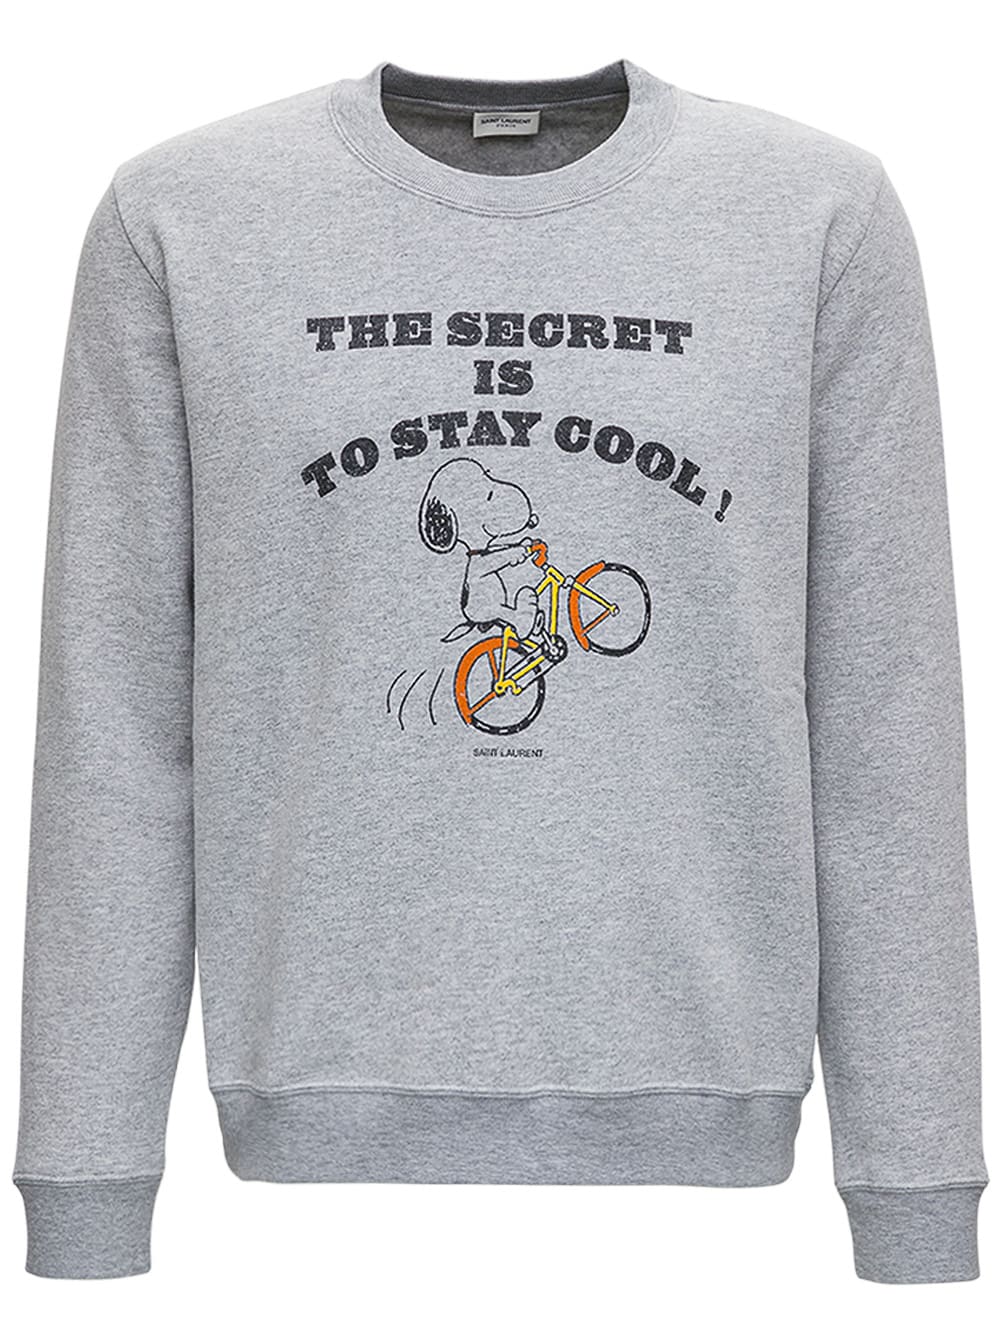 Saint Laurent Snoopy Grey Cotton Sweatshirt